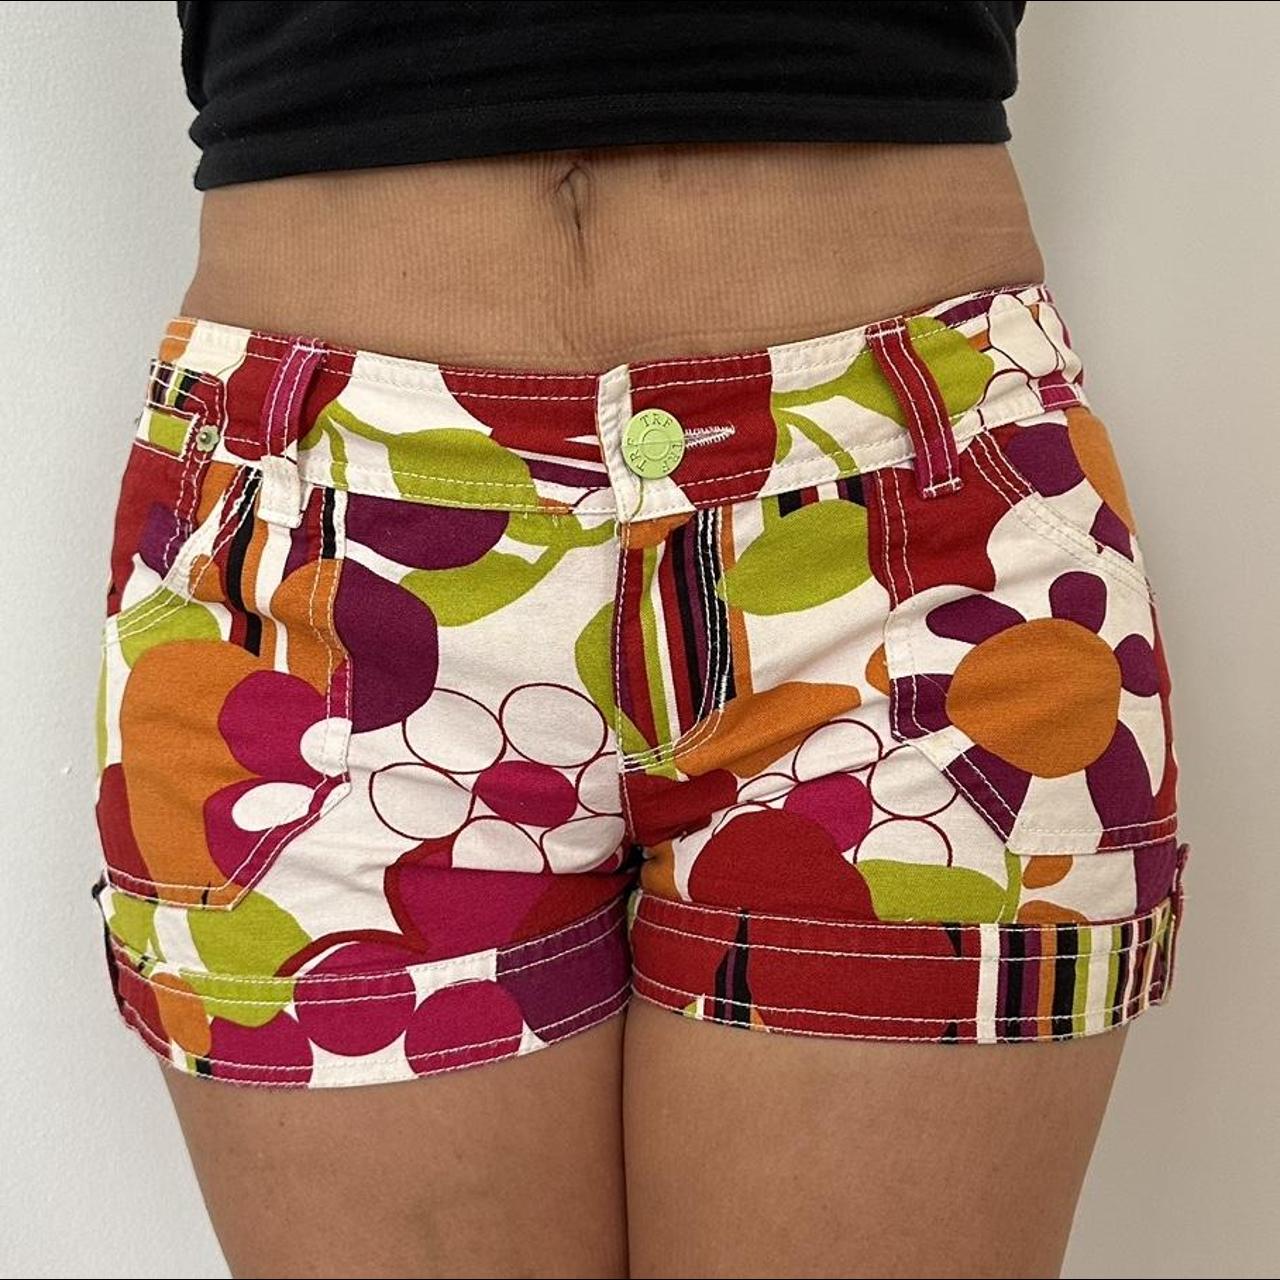 Emilio Pucci Women's Multi Shorts